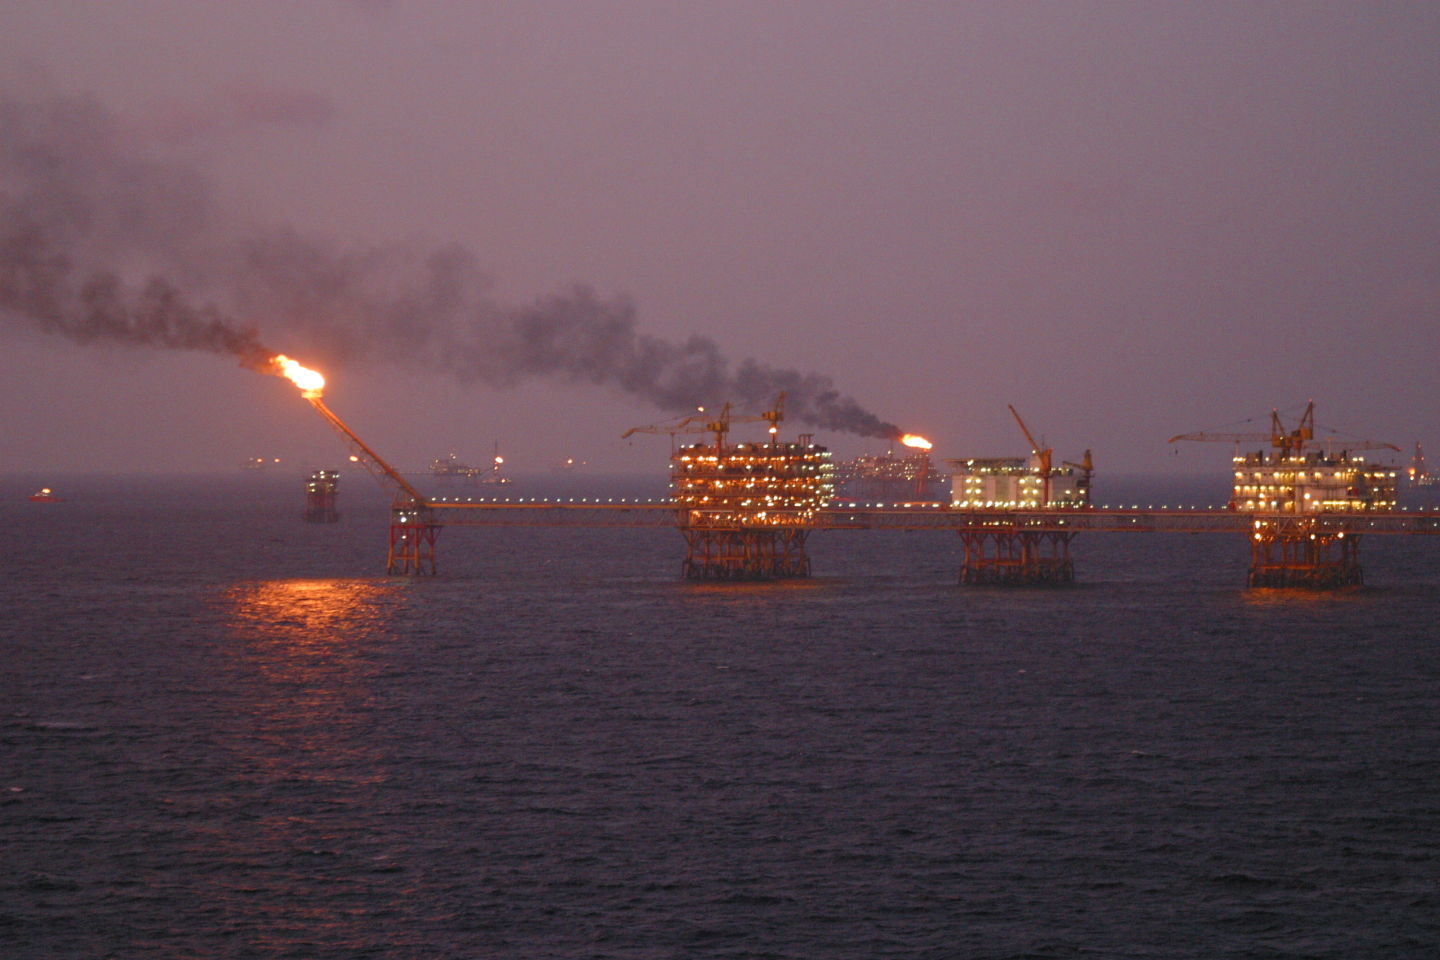 An oil rig offshore Vungtau